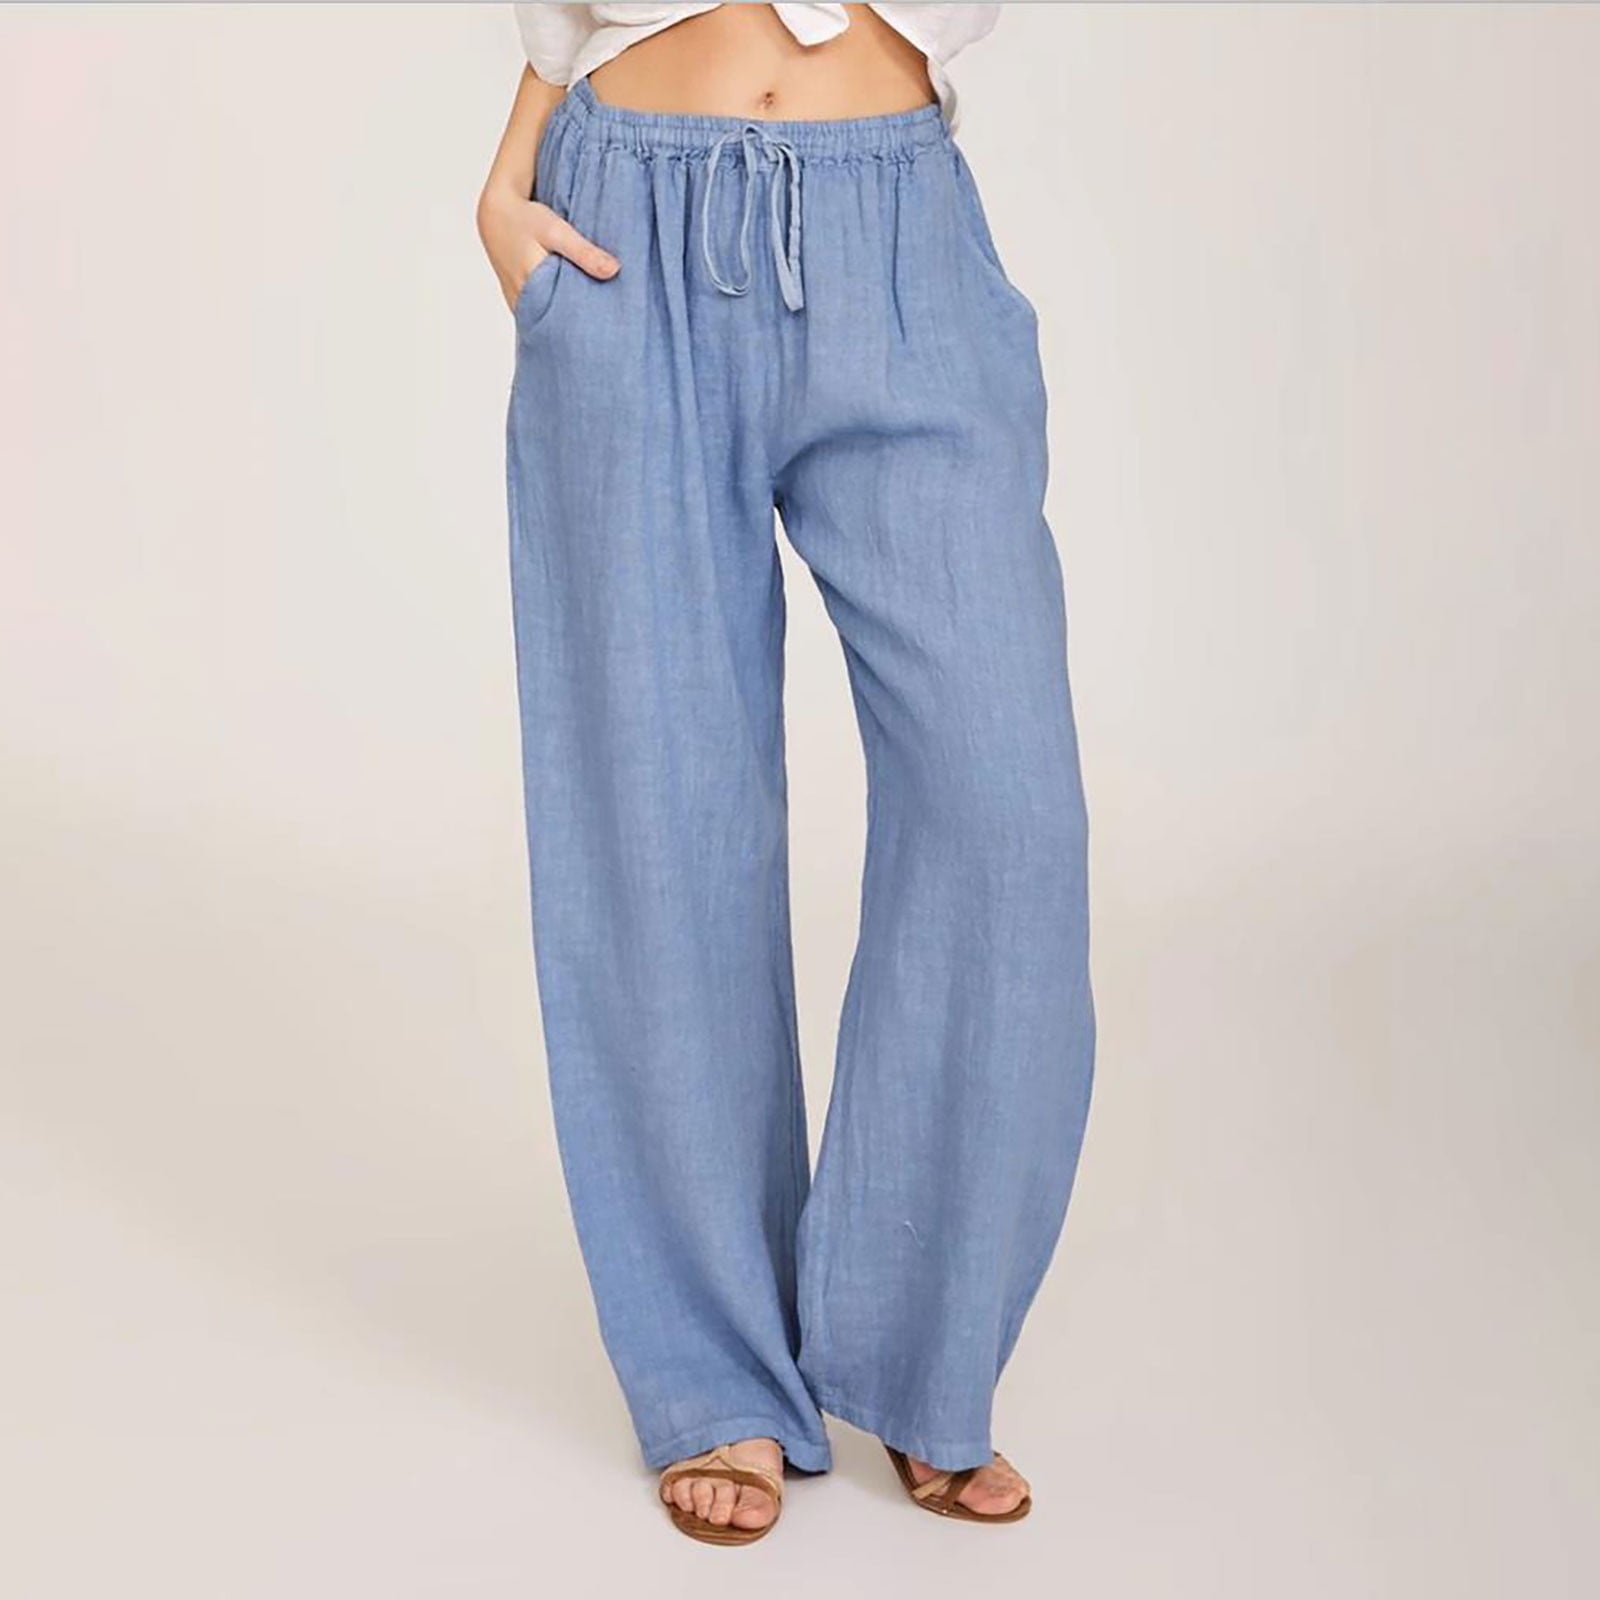 Levmjia Women's Jeans Plus Size Pants Clearance Summer Women Casual ...